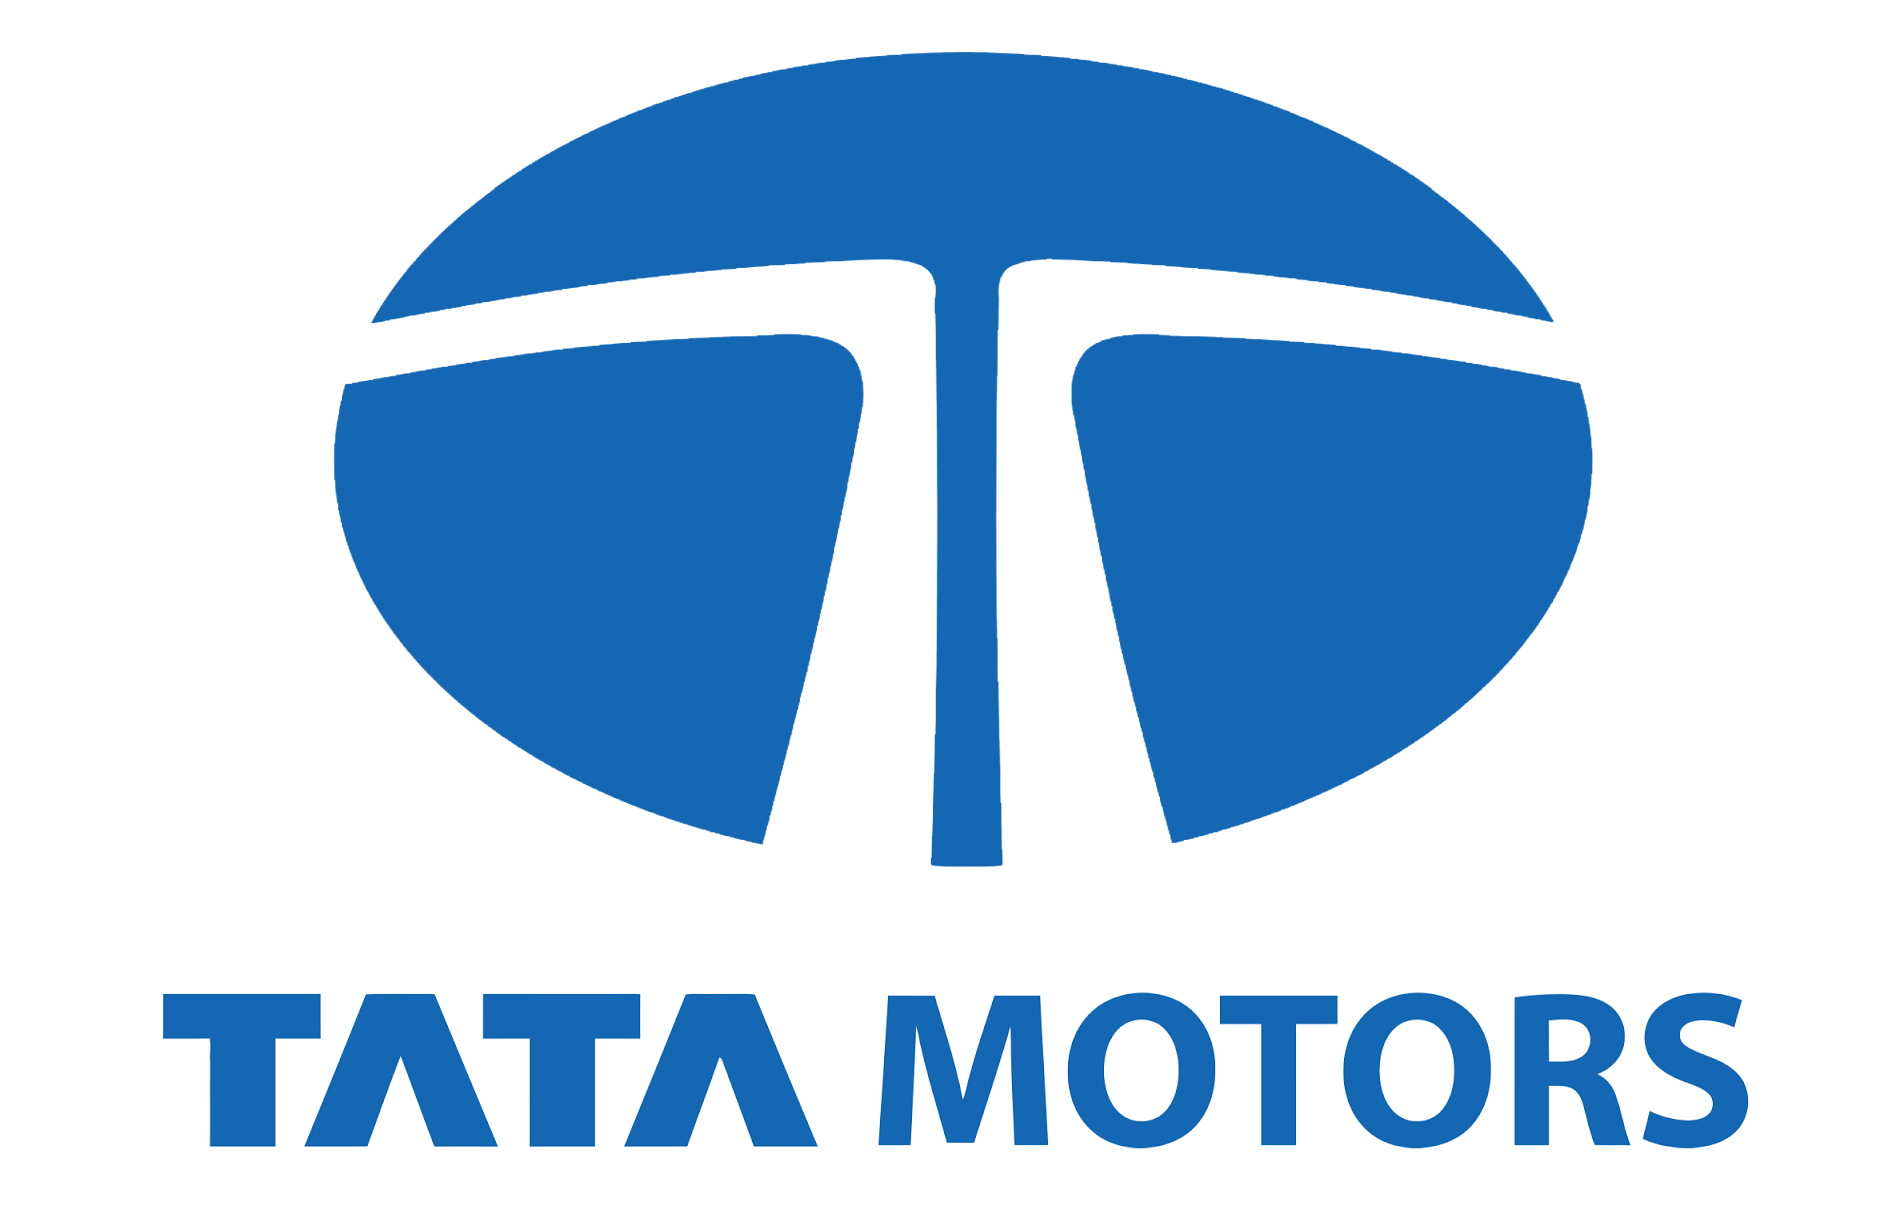 Tata Motors Cars Showroom - Prerana Motors|Repair Services|Automotive